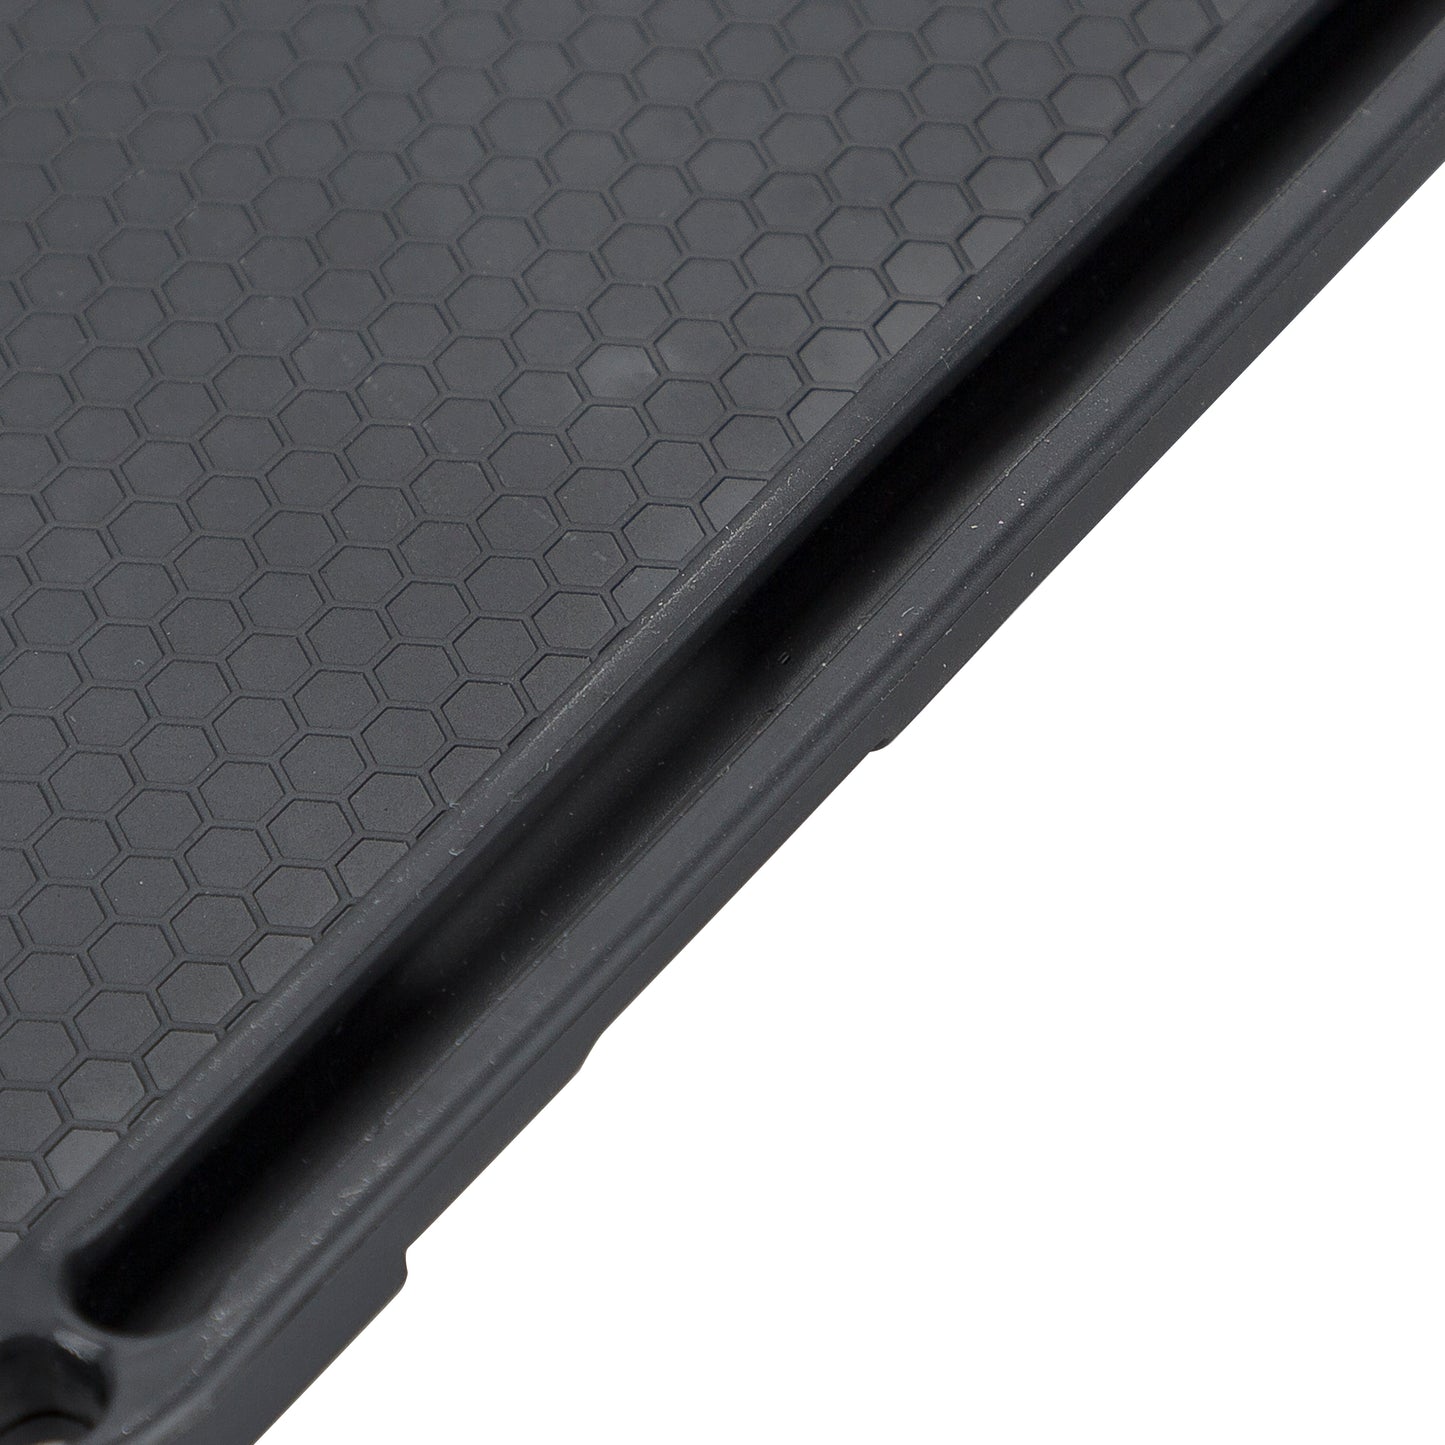 Apple iPad Mini (6") Leather Case - Teak Brown